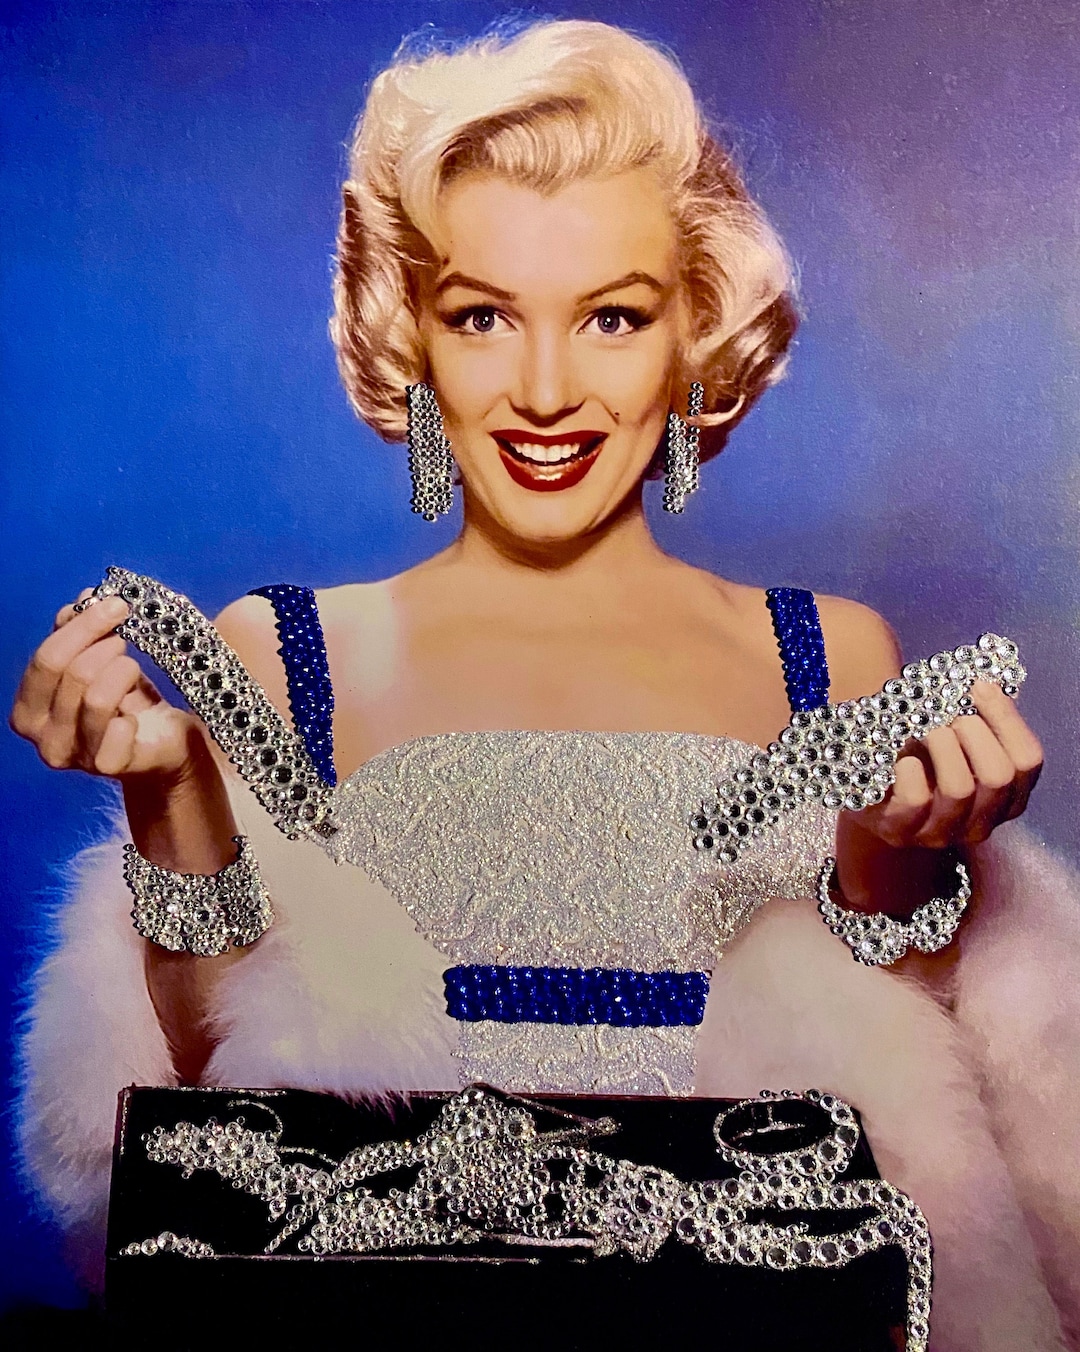 Marilyn monroe purse with - Gem